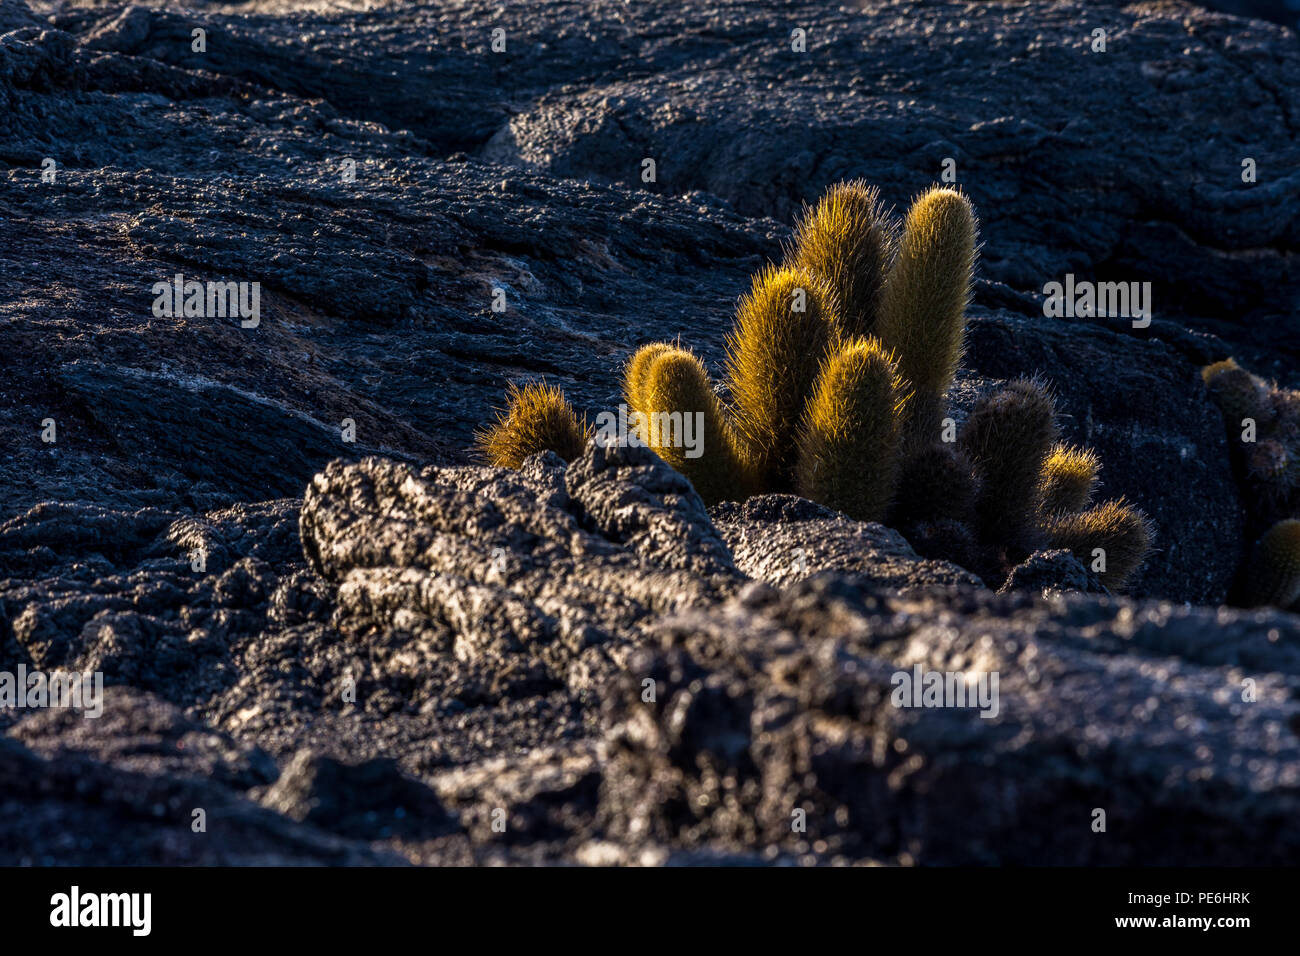 Cactus de lava (Brachycereus nesioticus) colonizador de lava que crece en rocas negras de lava en las Islas Galápagos, Ecuador. Foto de stock